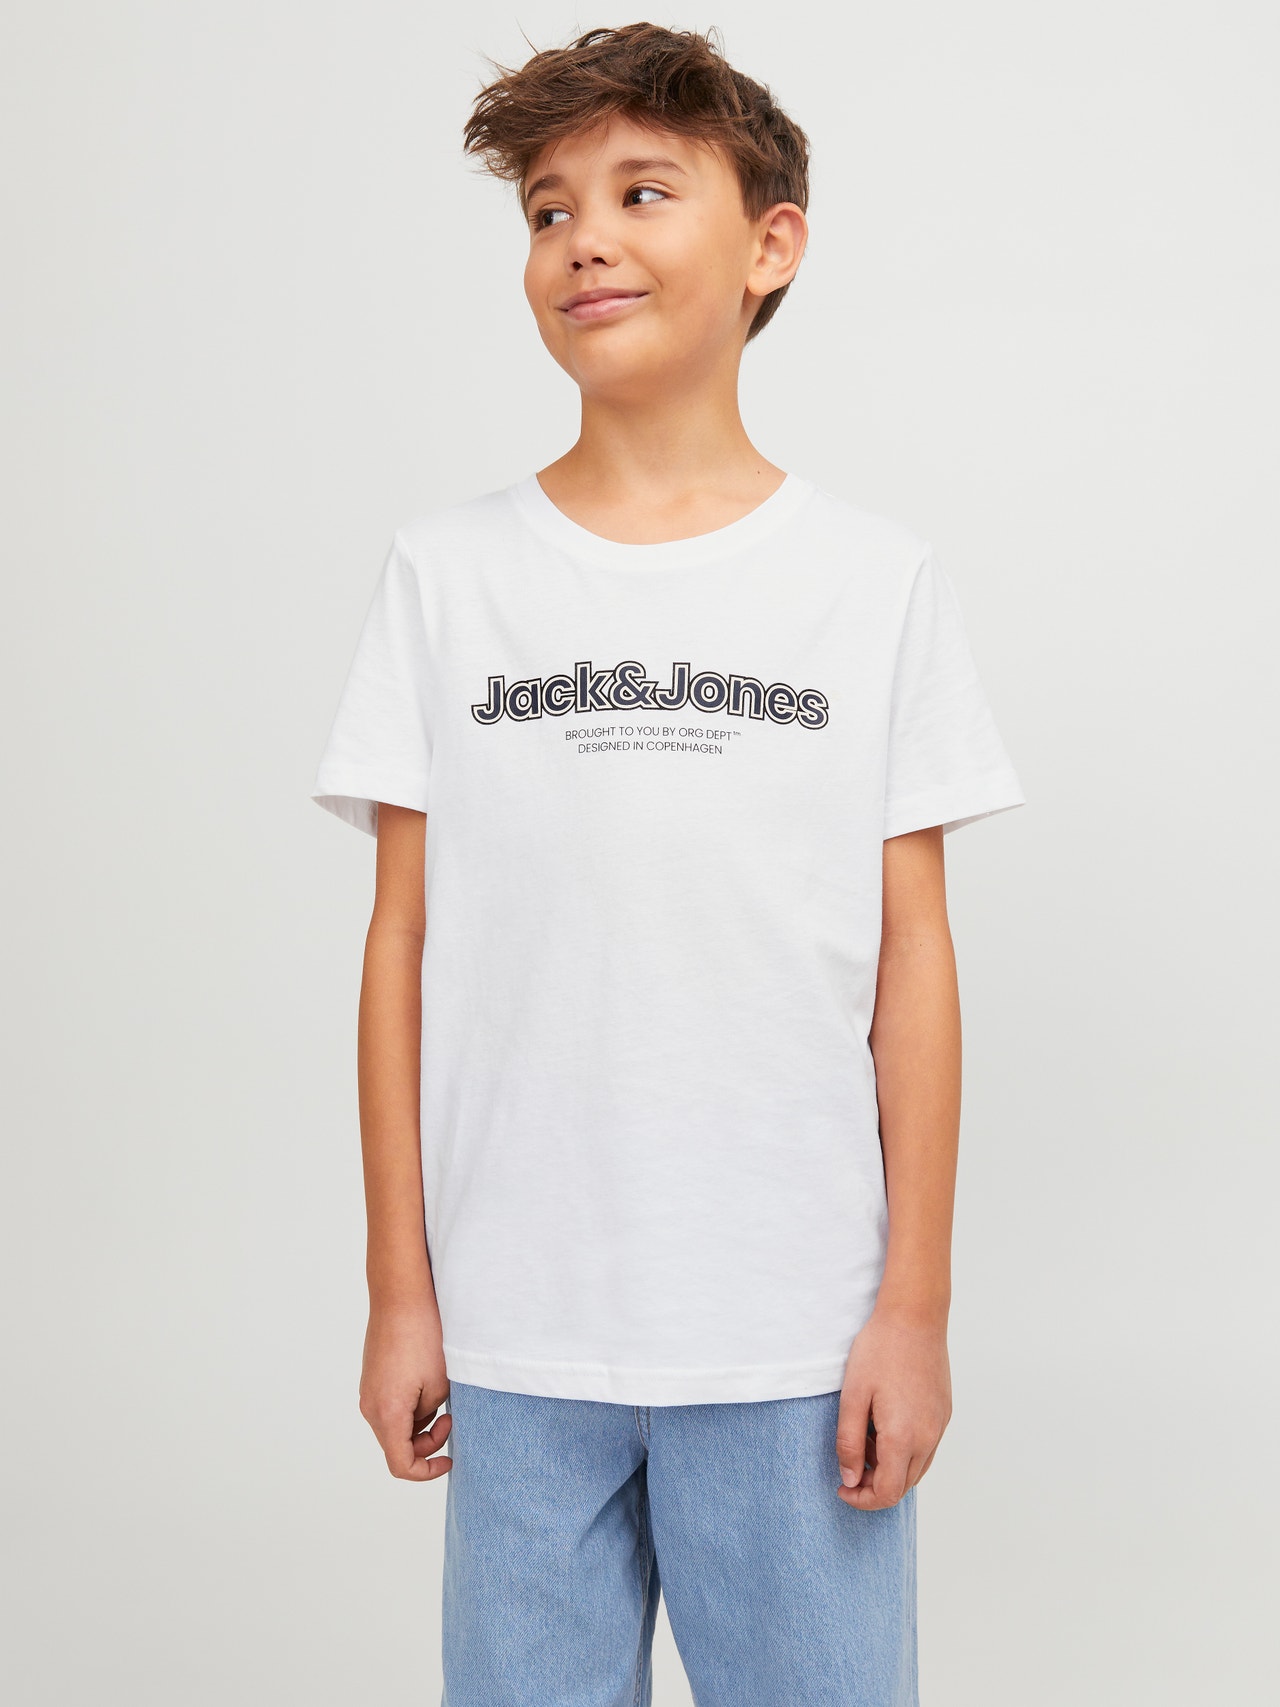 Jack & Jones Logo T-shirt Für jungs -Bright White - 12247603